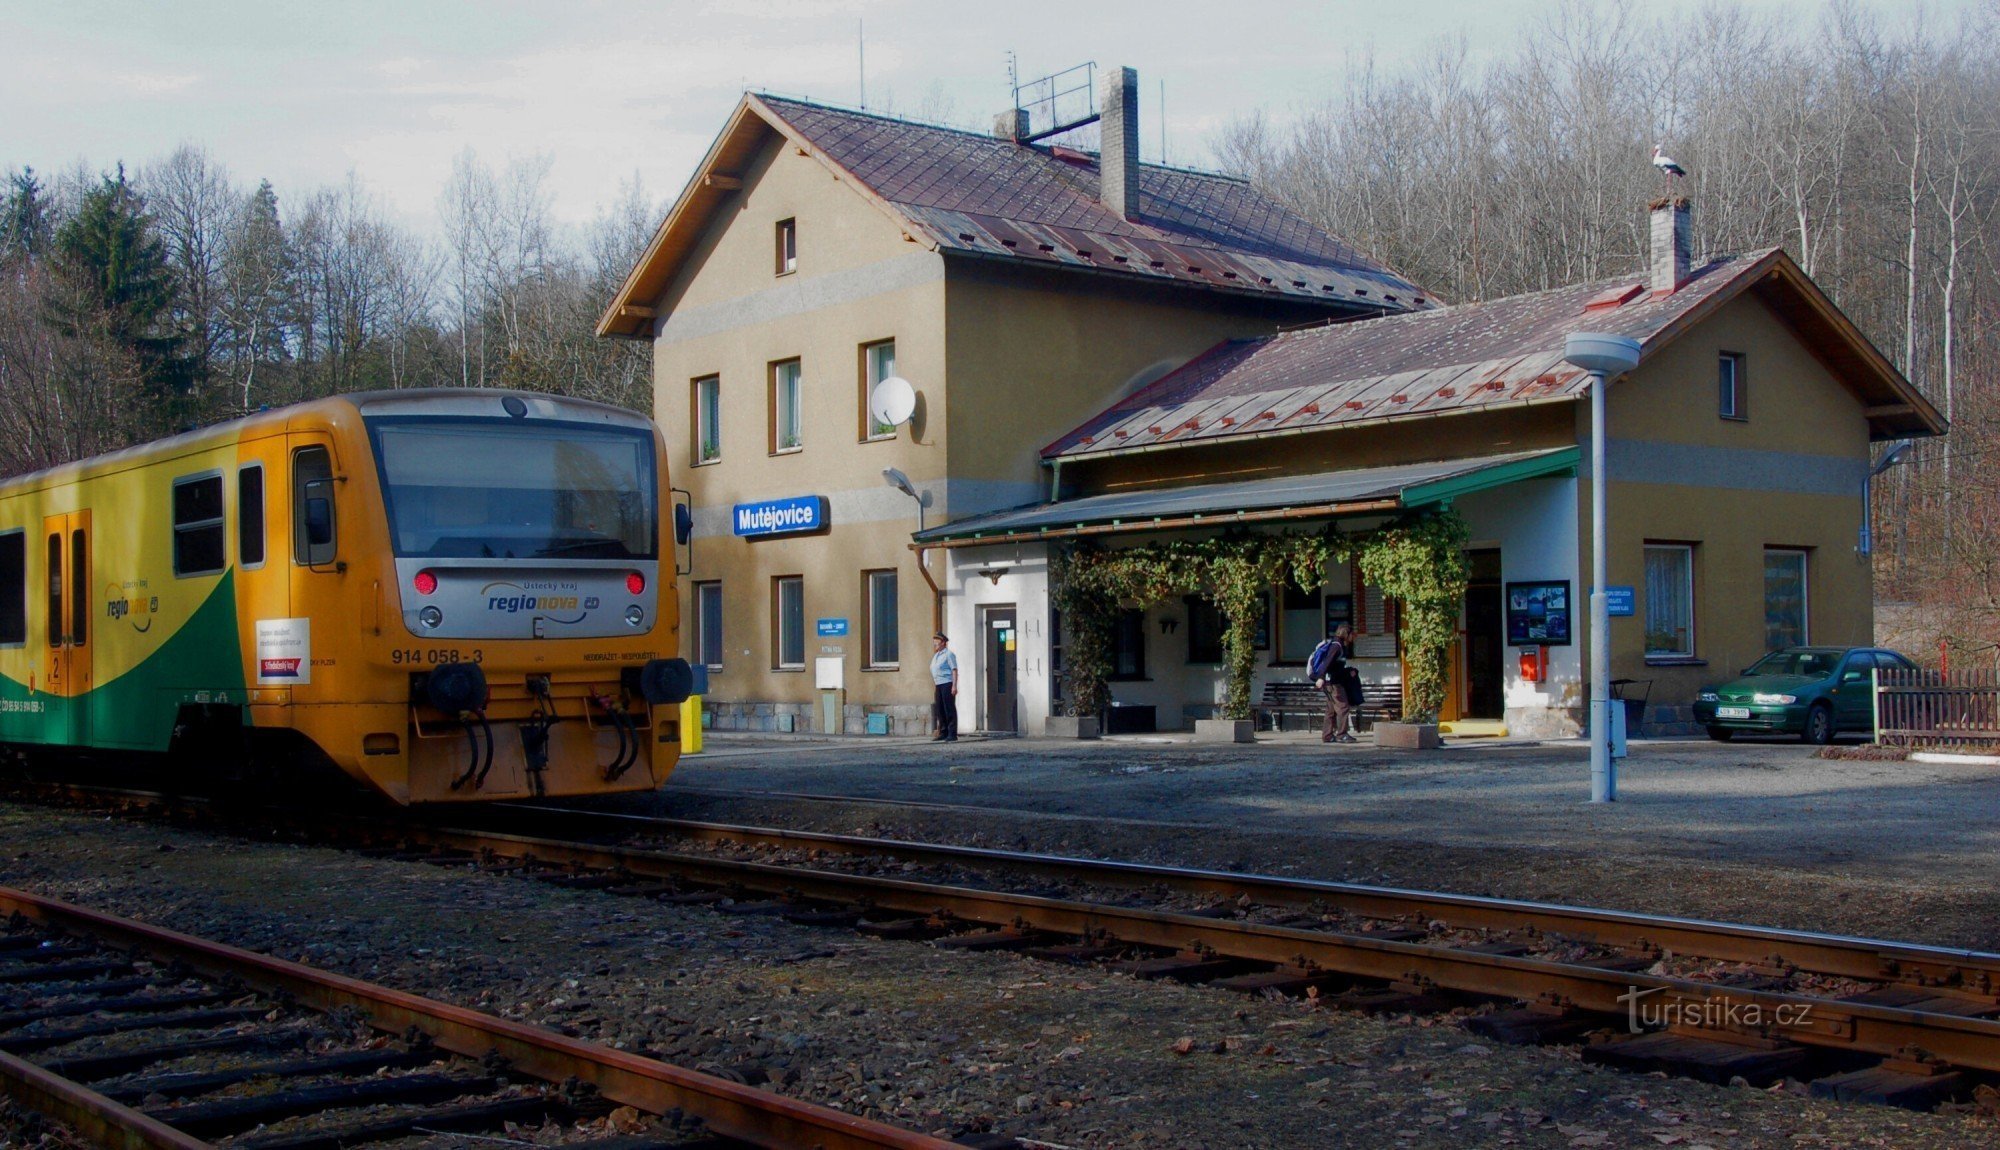 Σιδηροδρομικός σταθμός Mutějovice